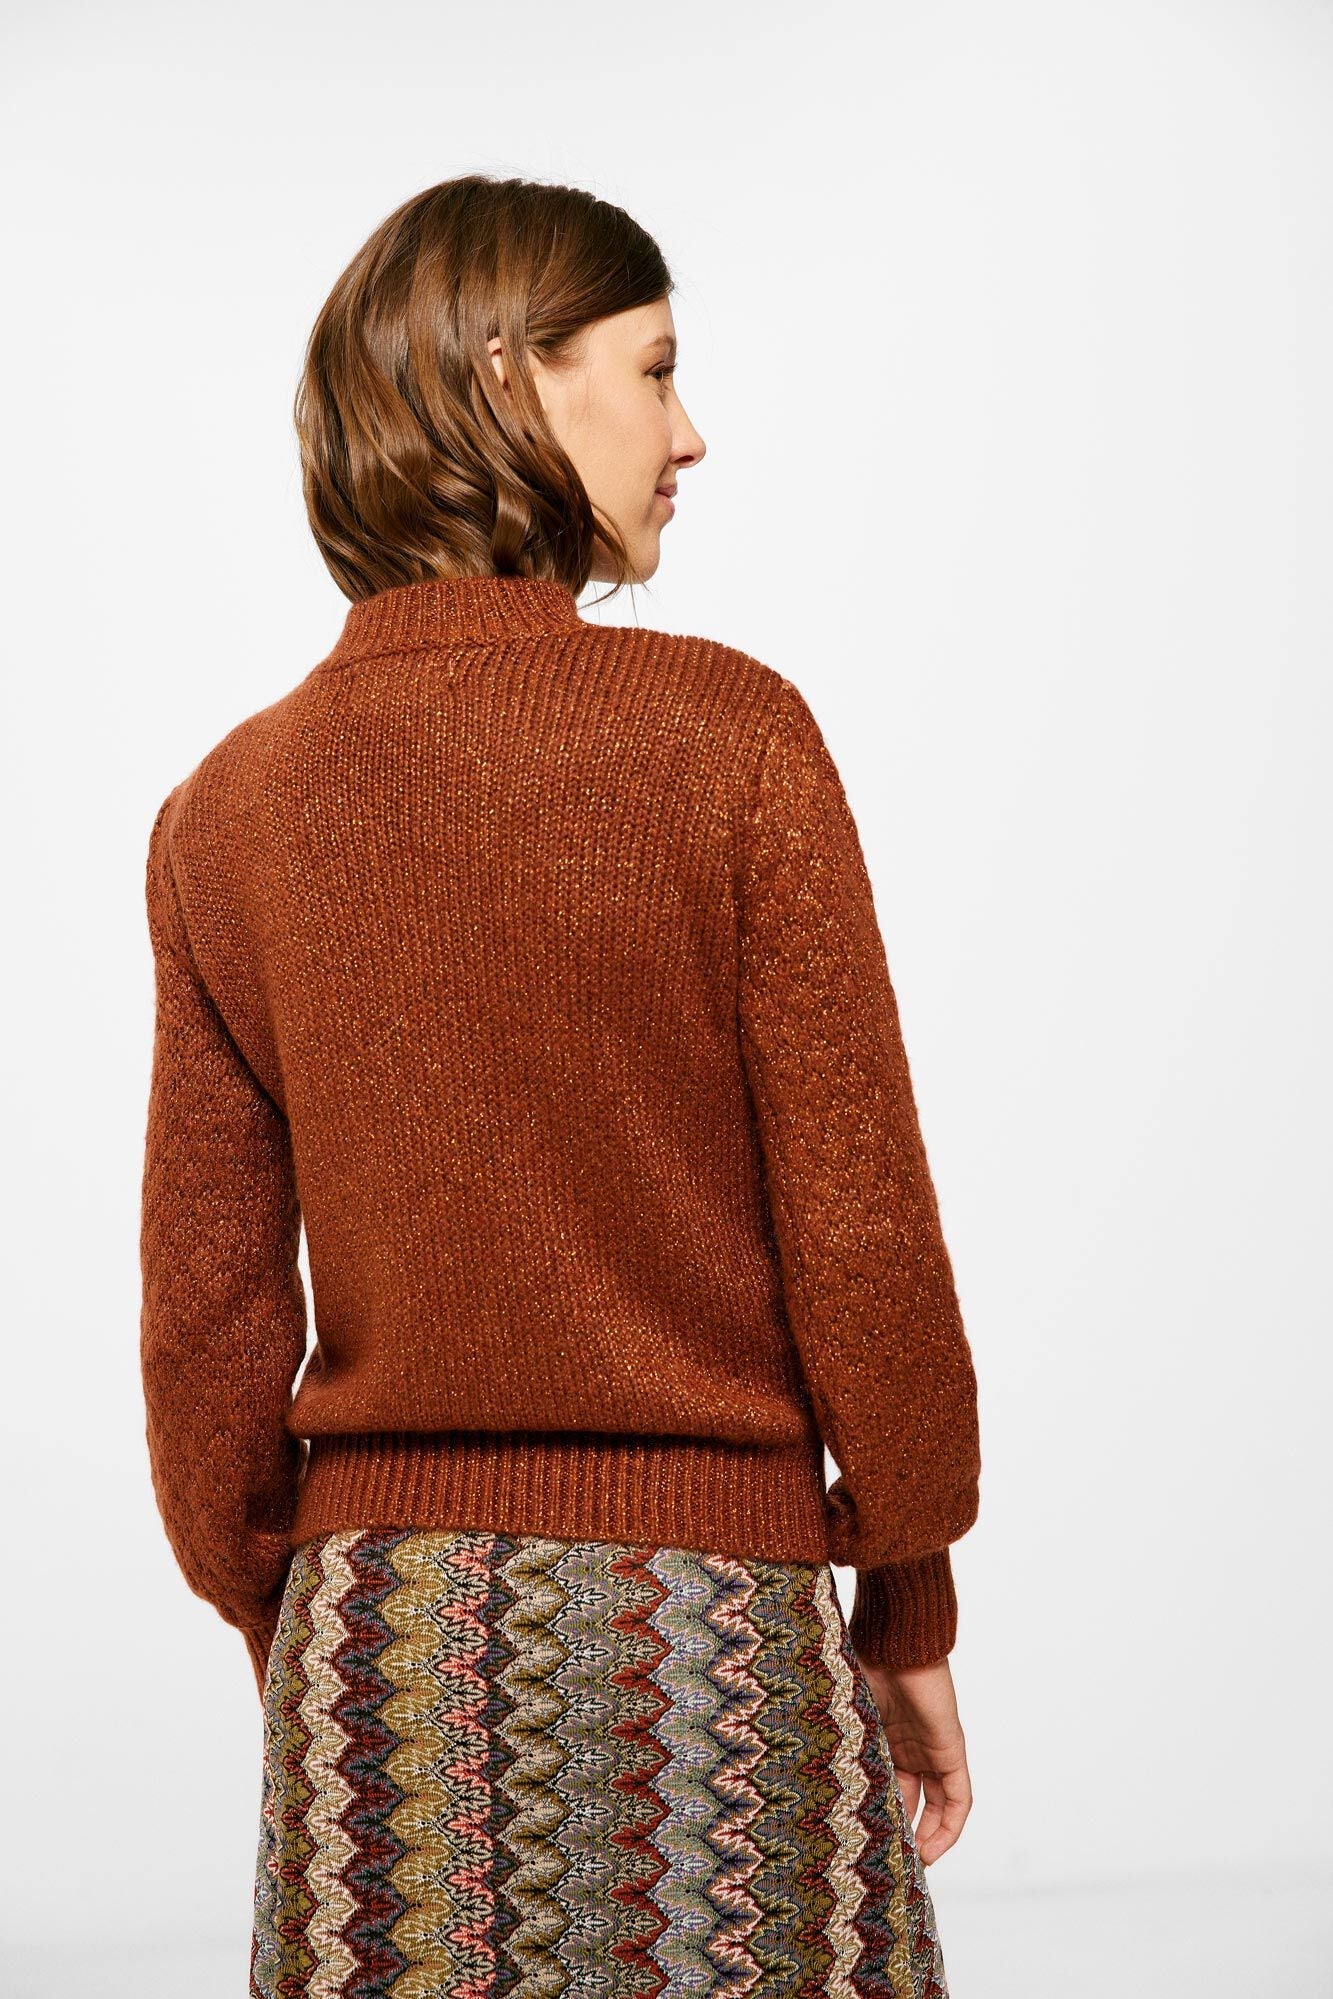 Lurex and wool textured jumper